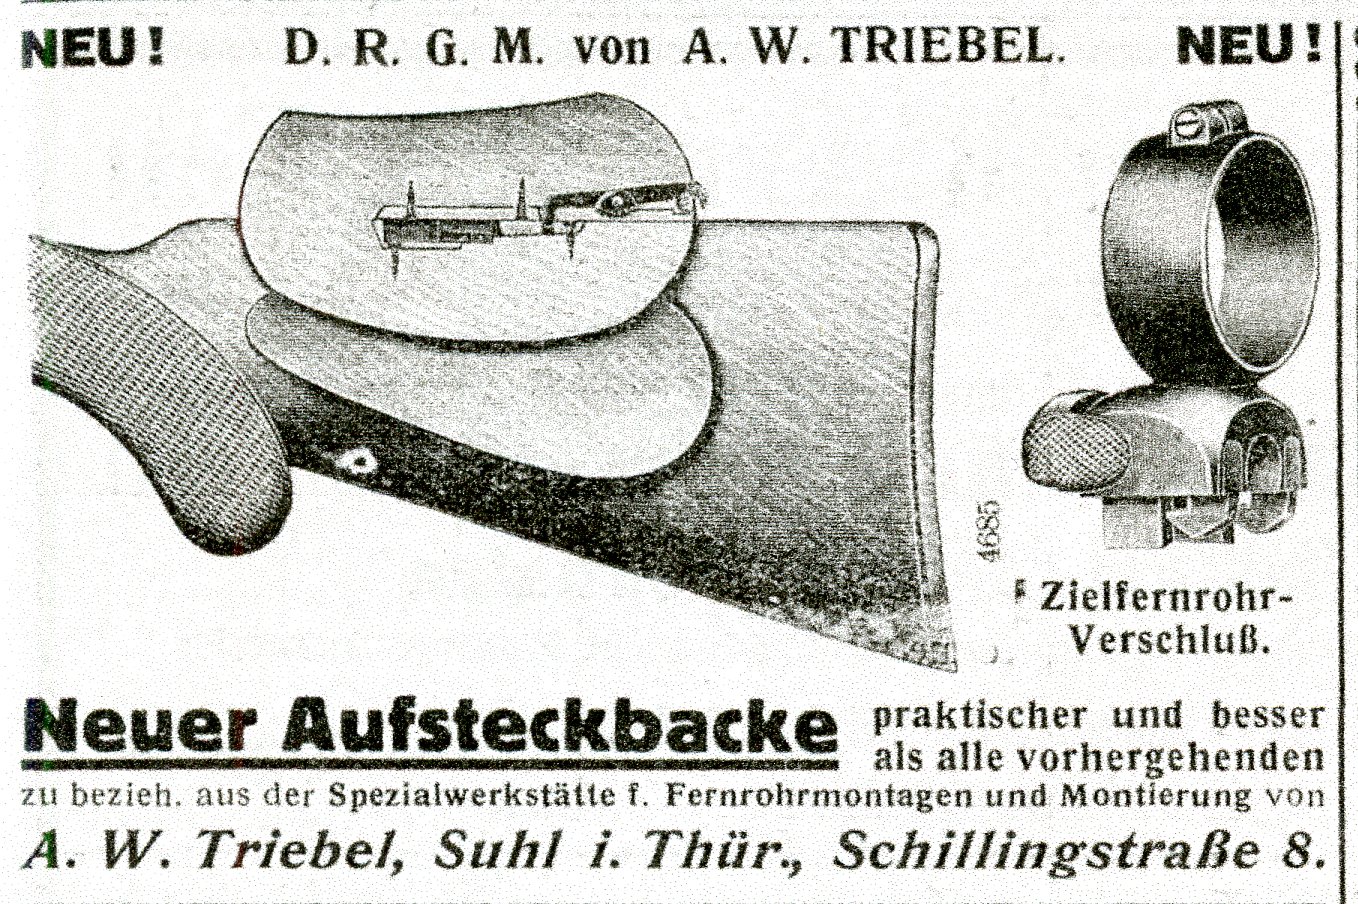 From a 1913 issue of the Büchsenmacher und Waffenhandler